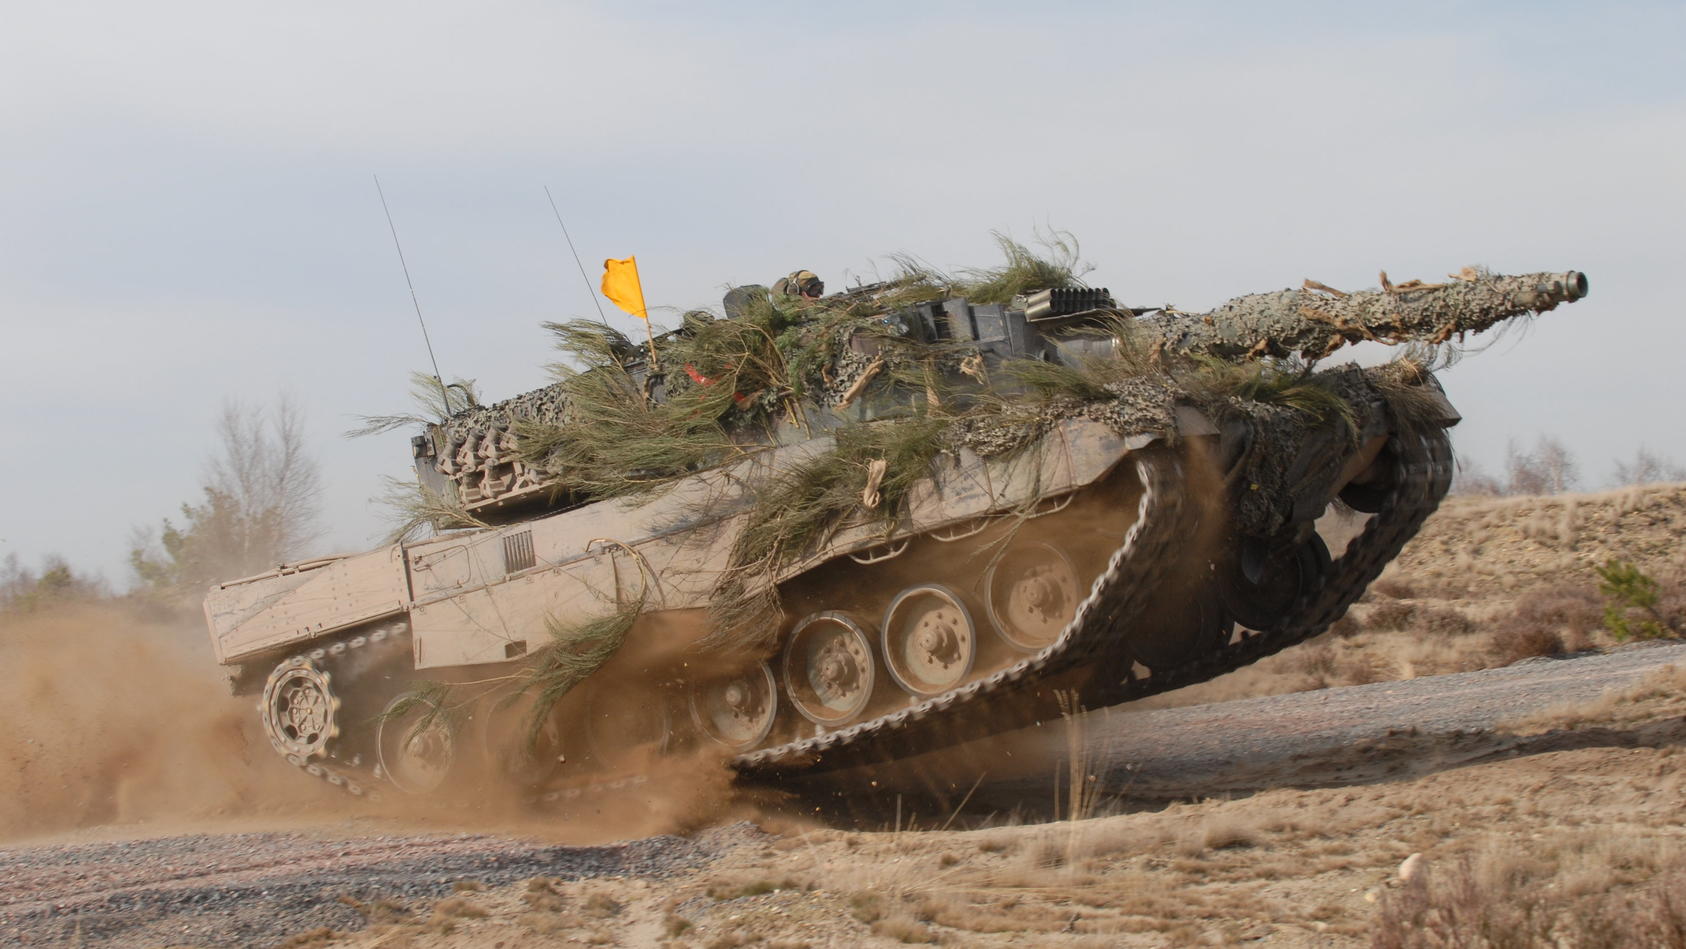 HANDOUT - 31.03.2008, ---: Undatiertes Handout des Rüstungskonzerns Krauss-Maffei Wegmann zeigt einen Kampfpanzer Leopard 2A4. Die Bundeswehr verfügte im vergangenen Jahr über 312 Leopard-2-Panzer, darunter aber kein einziges Modell der älteren Versi